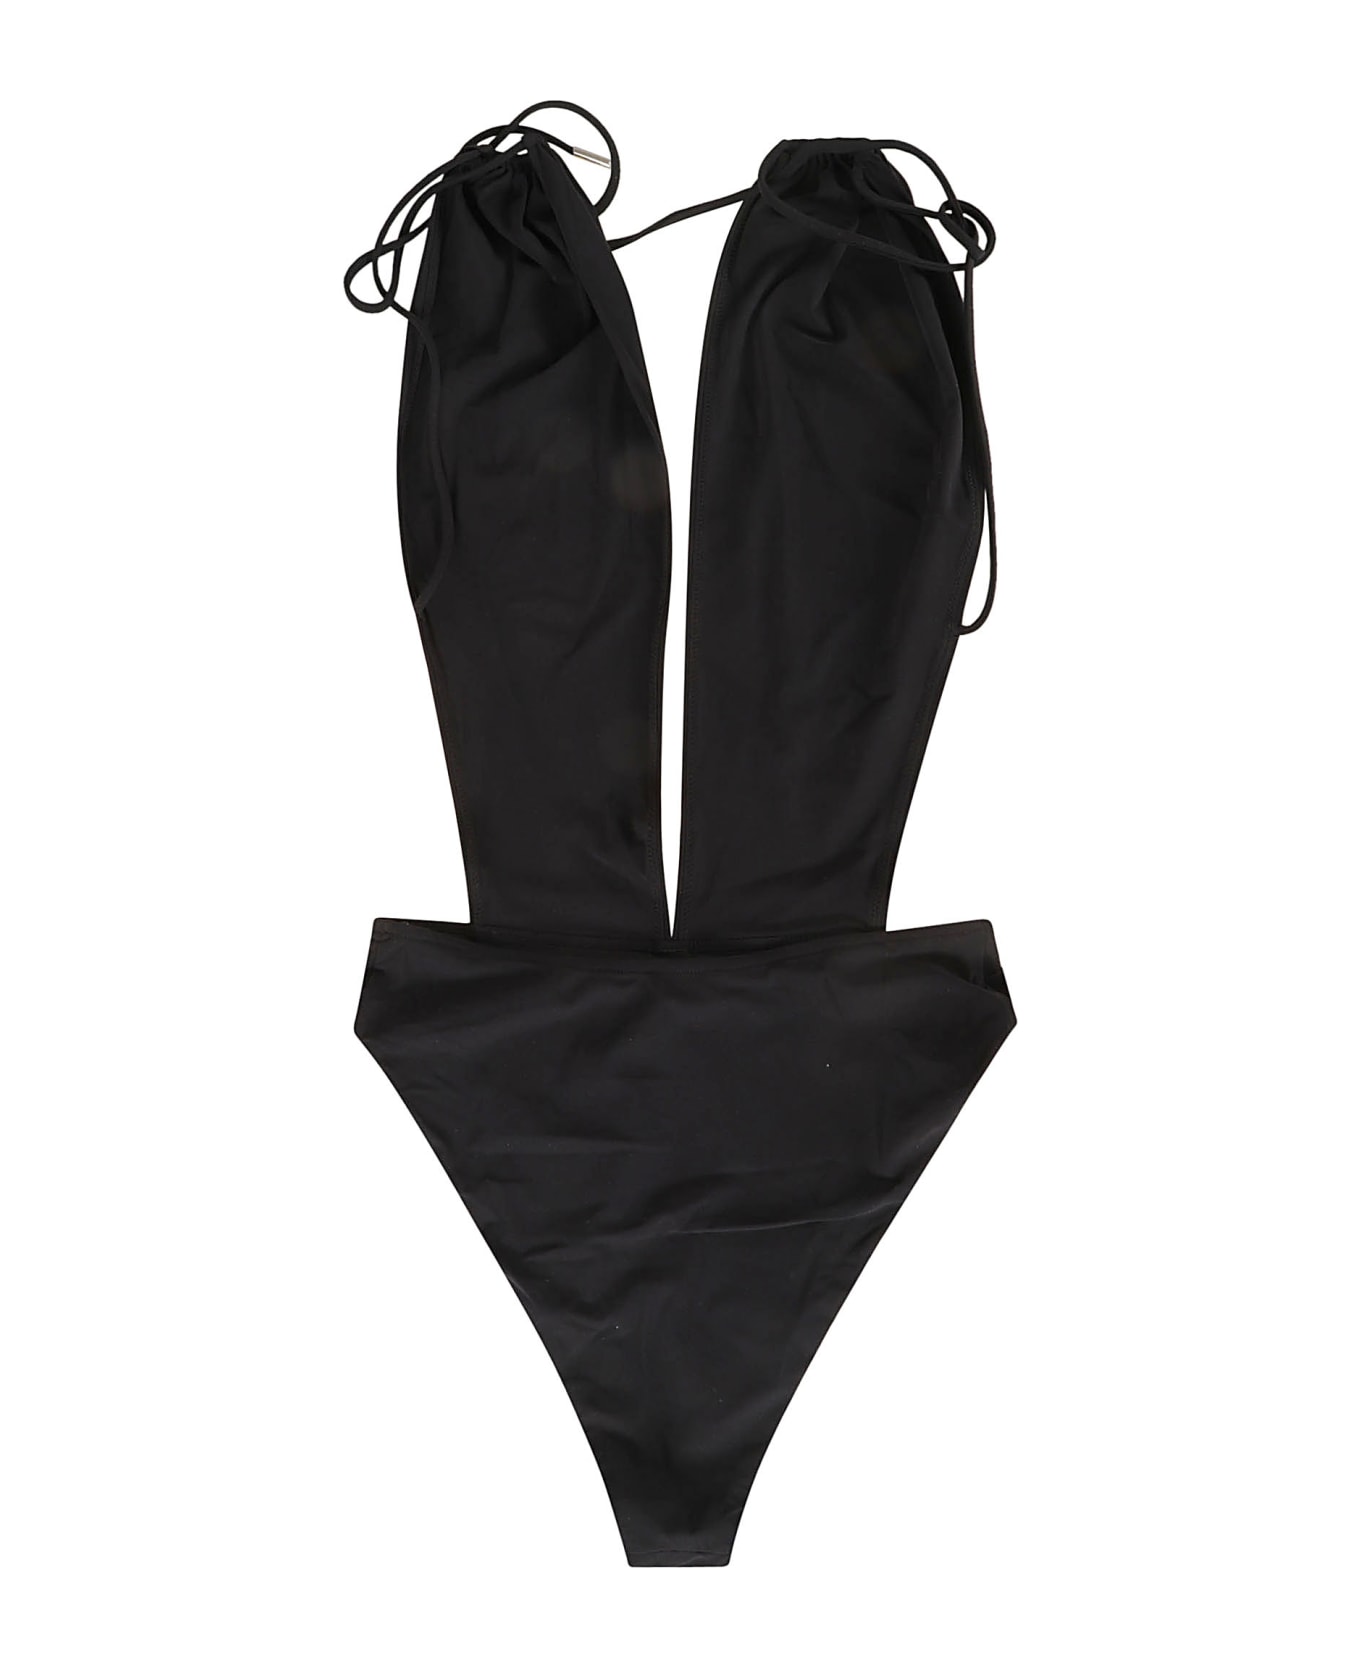 Saint Laurent Maillot V-halter Swimsuit - Black